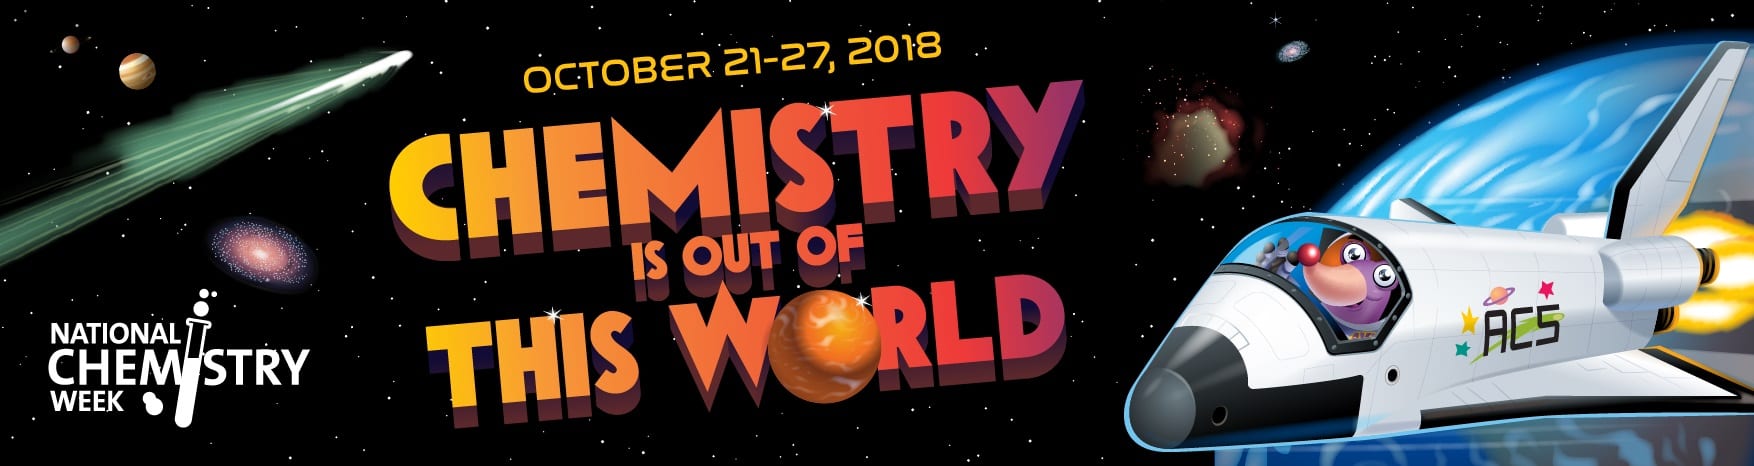 National Chemistry Week 2018